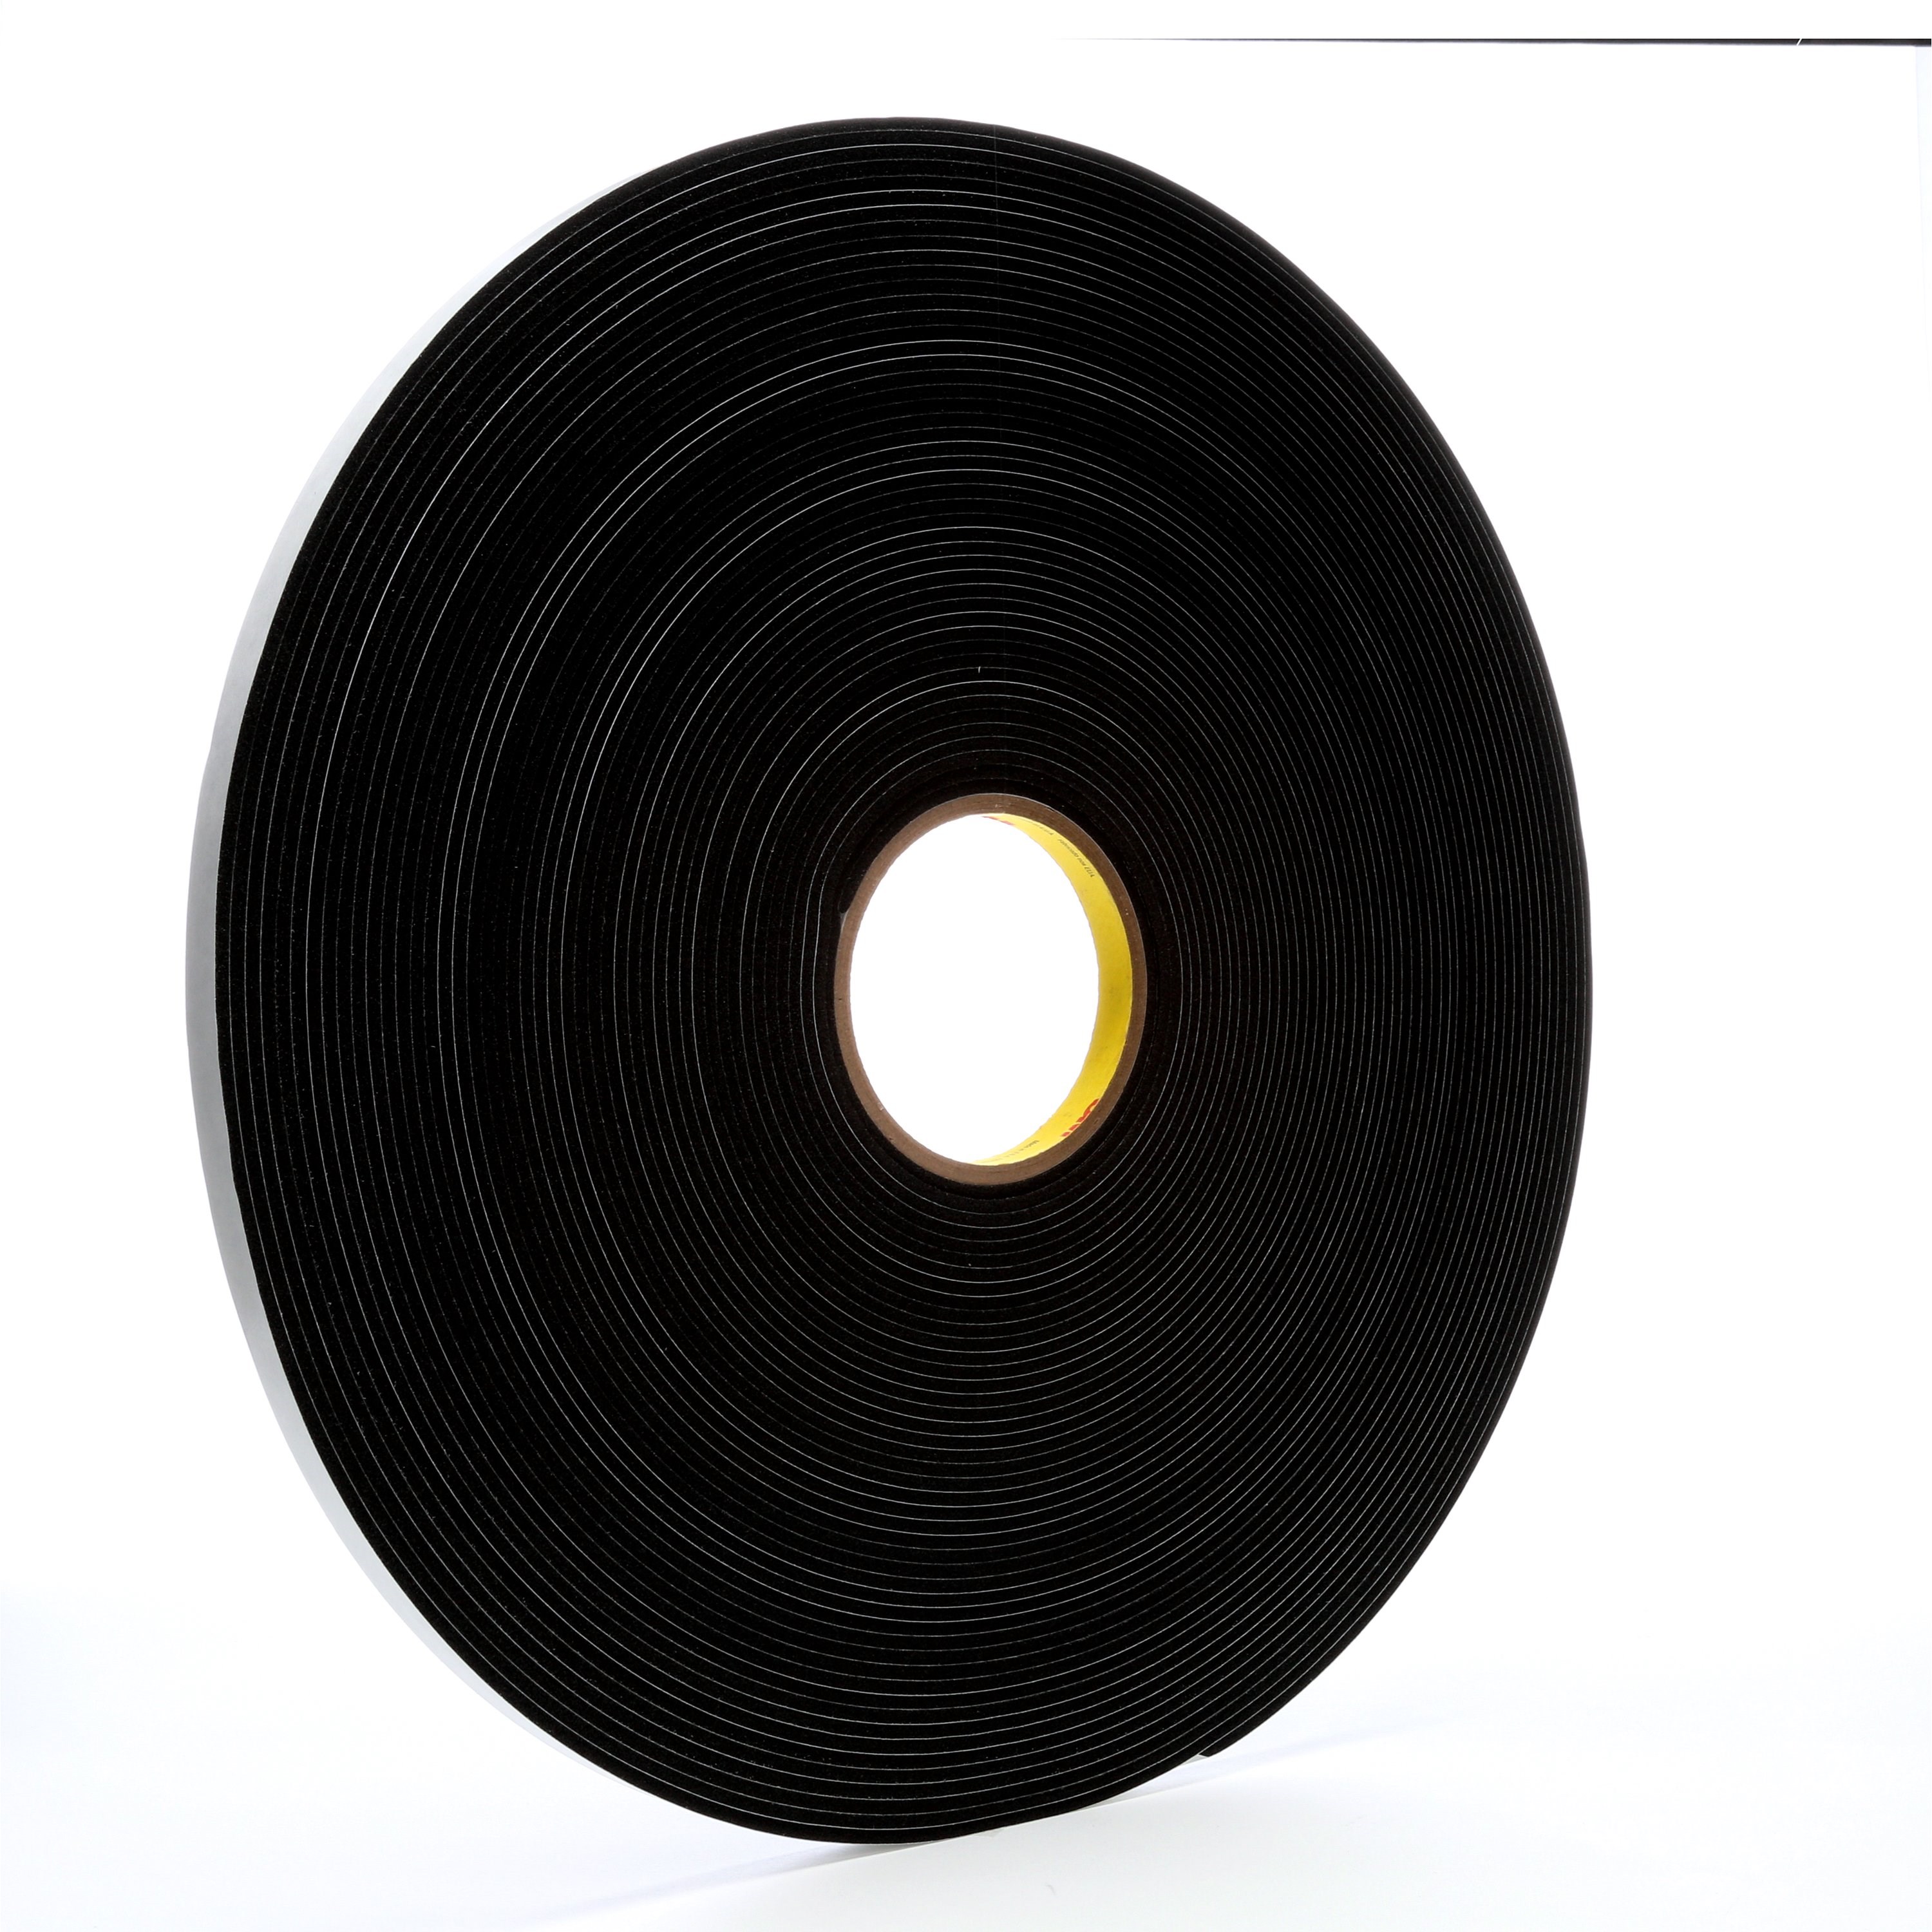 3M™ Vinyl Foam Tape 4508 Black 1/2 in x 36 yd